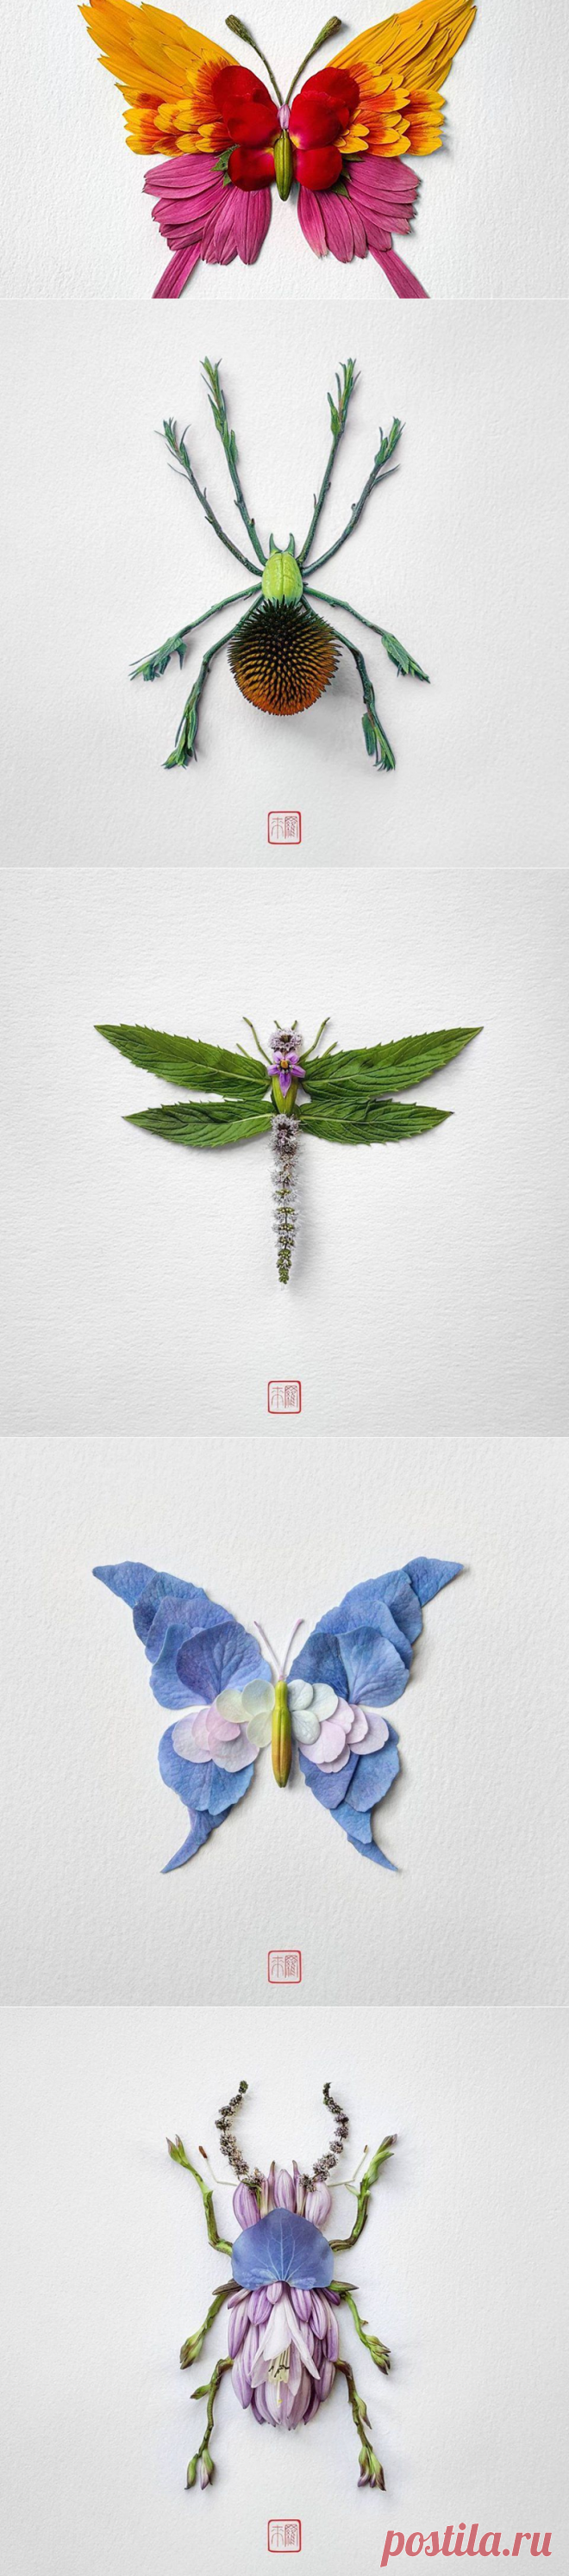 Волшебство из лепестков: необычные композиции Raku Inoue - Ярмарка Мастеров - ручная работа, handmade